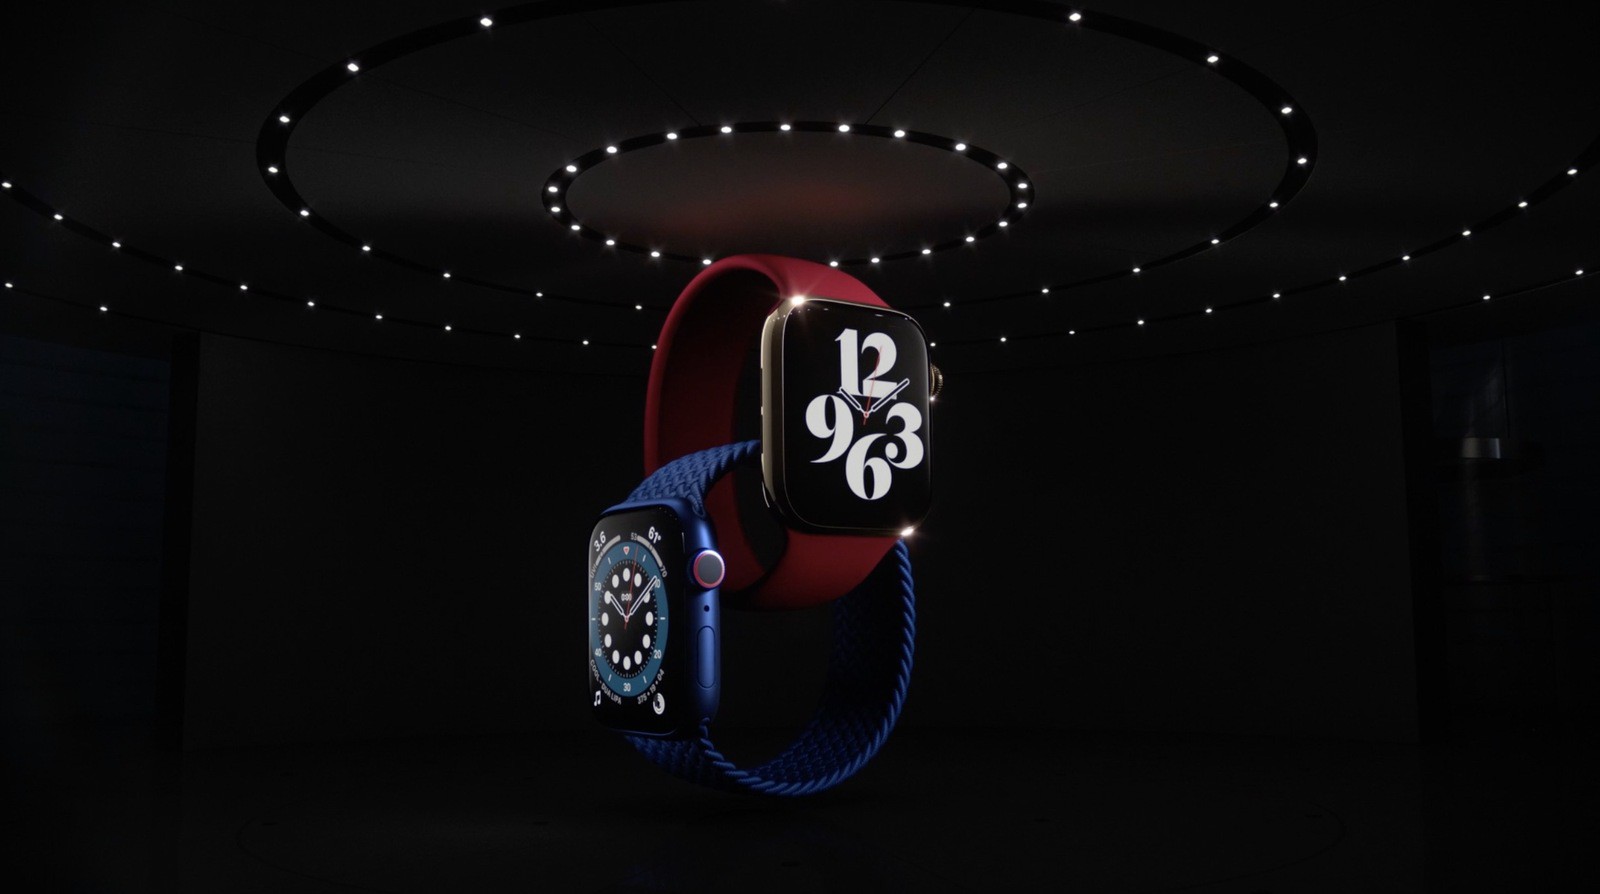 O novo Apple Watch S6 com inovações.